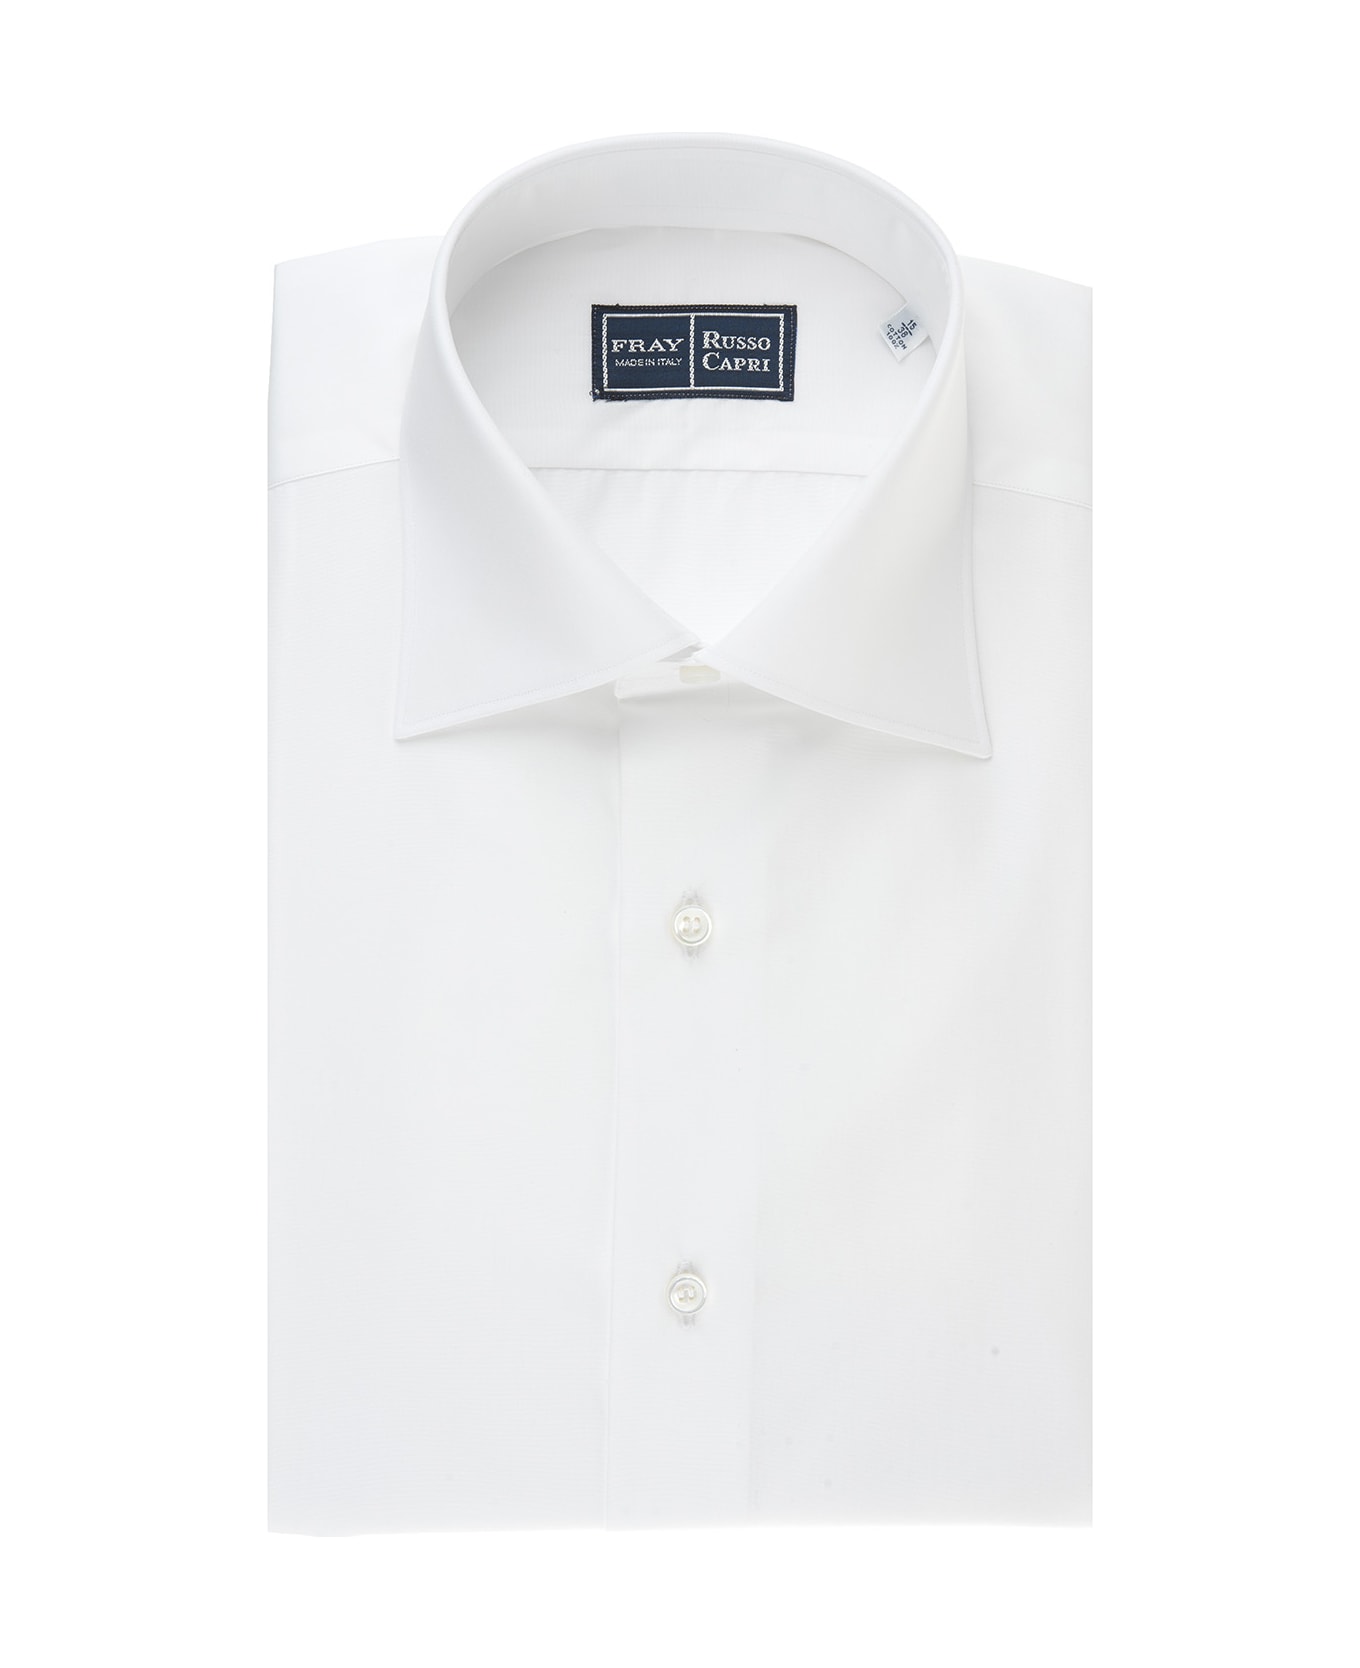 Fray Regular Fit Shirt In White Popeline - White